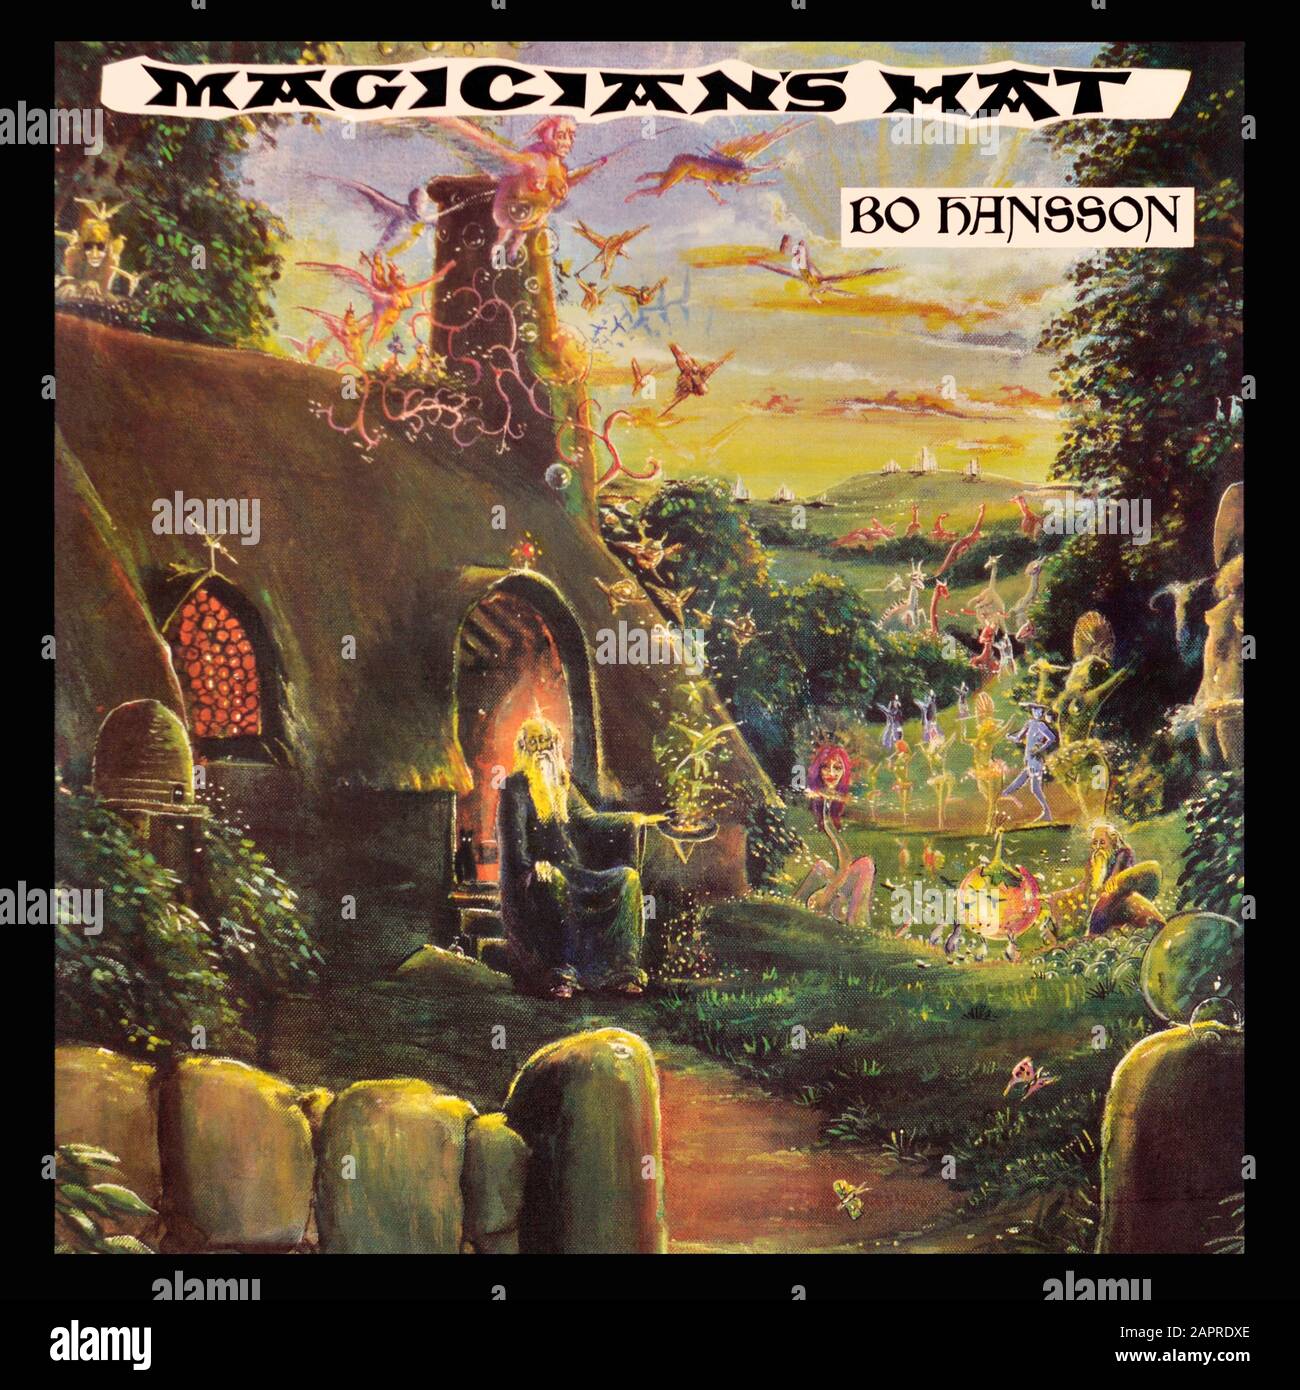 Bo Hansson - couverture originale de l'album en vinyle - Magicien's Hat - 1973 Banque D'Images